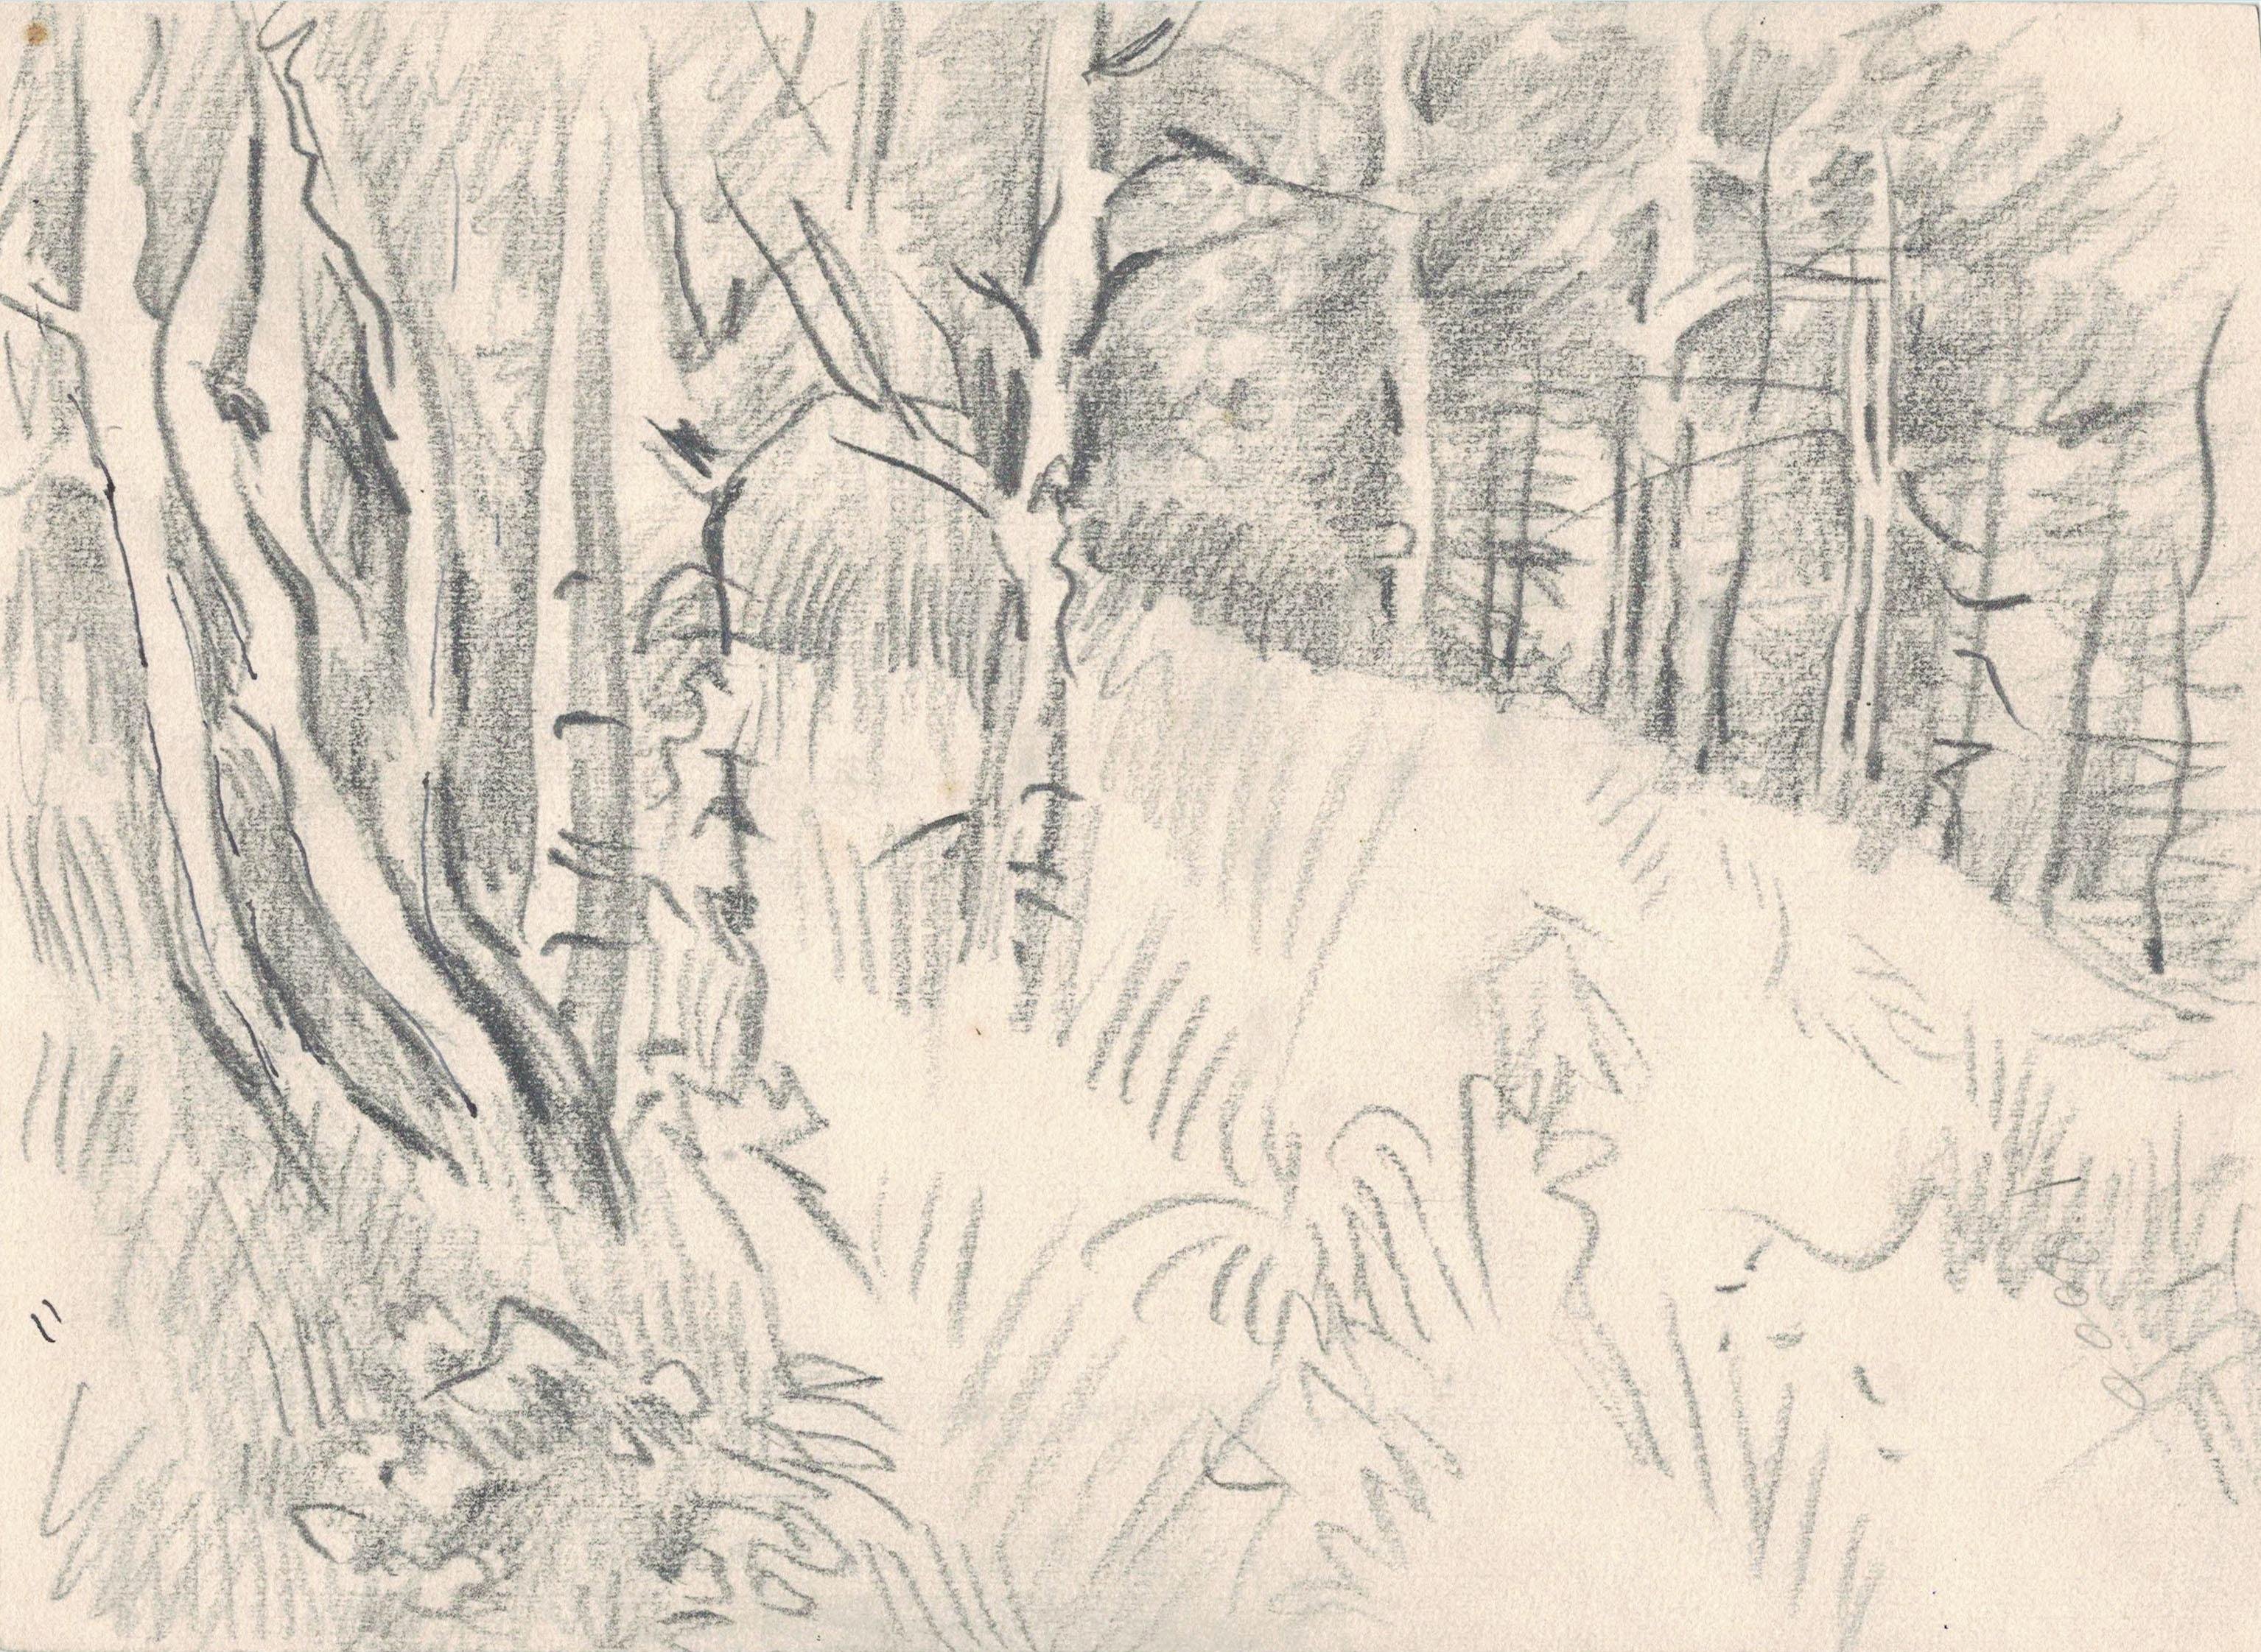 Иллюстрация по литературе 5 класс васюткино озеро. Зарисовки карандашом иллюстрации Васюткино озеро. Васюткино озеро рисунок карандашом. Рисунок к произведению Васюткино озеро. Рисунок Васюткино озеро раскраска.